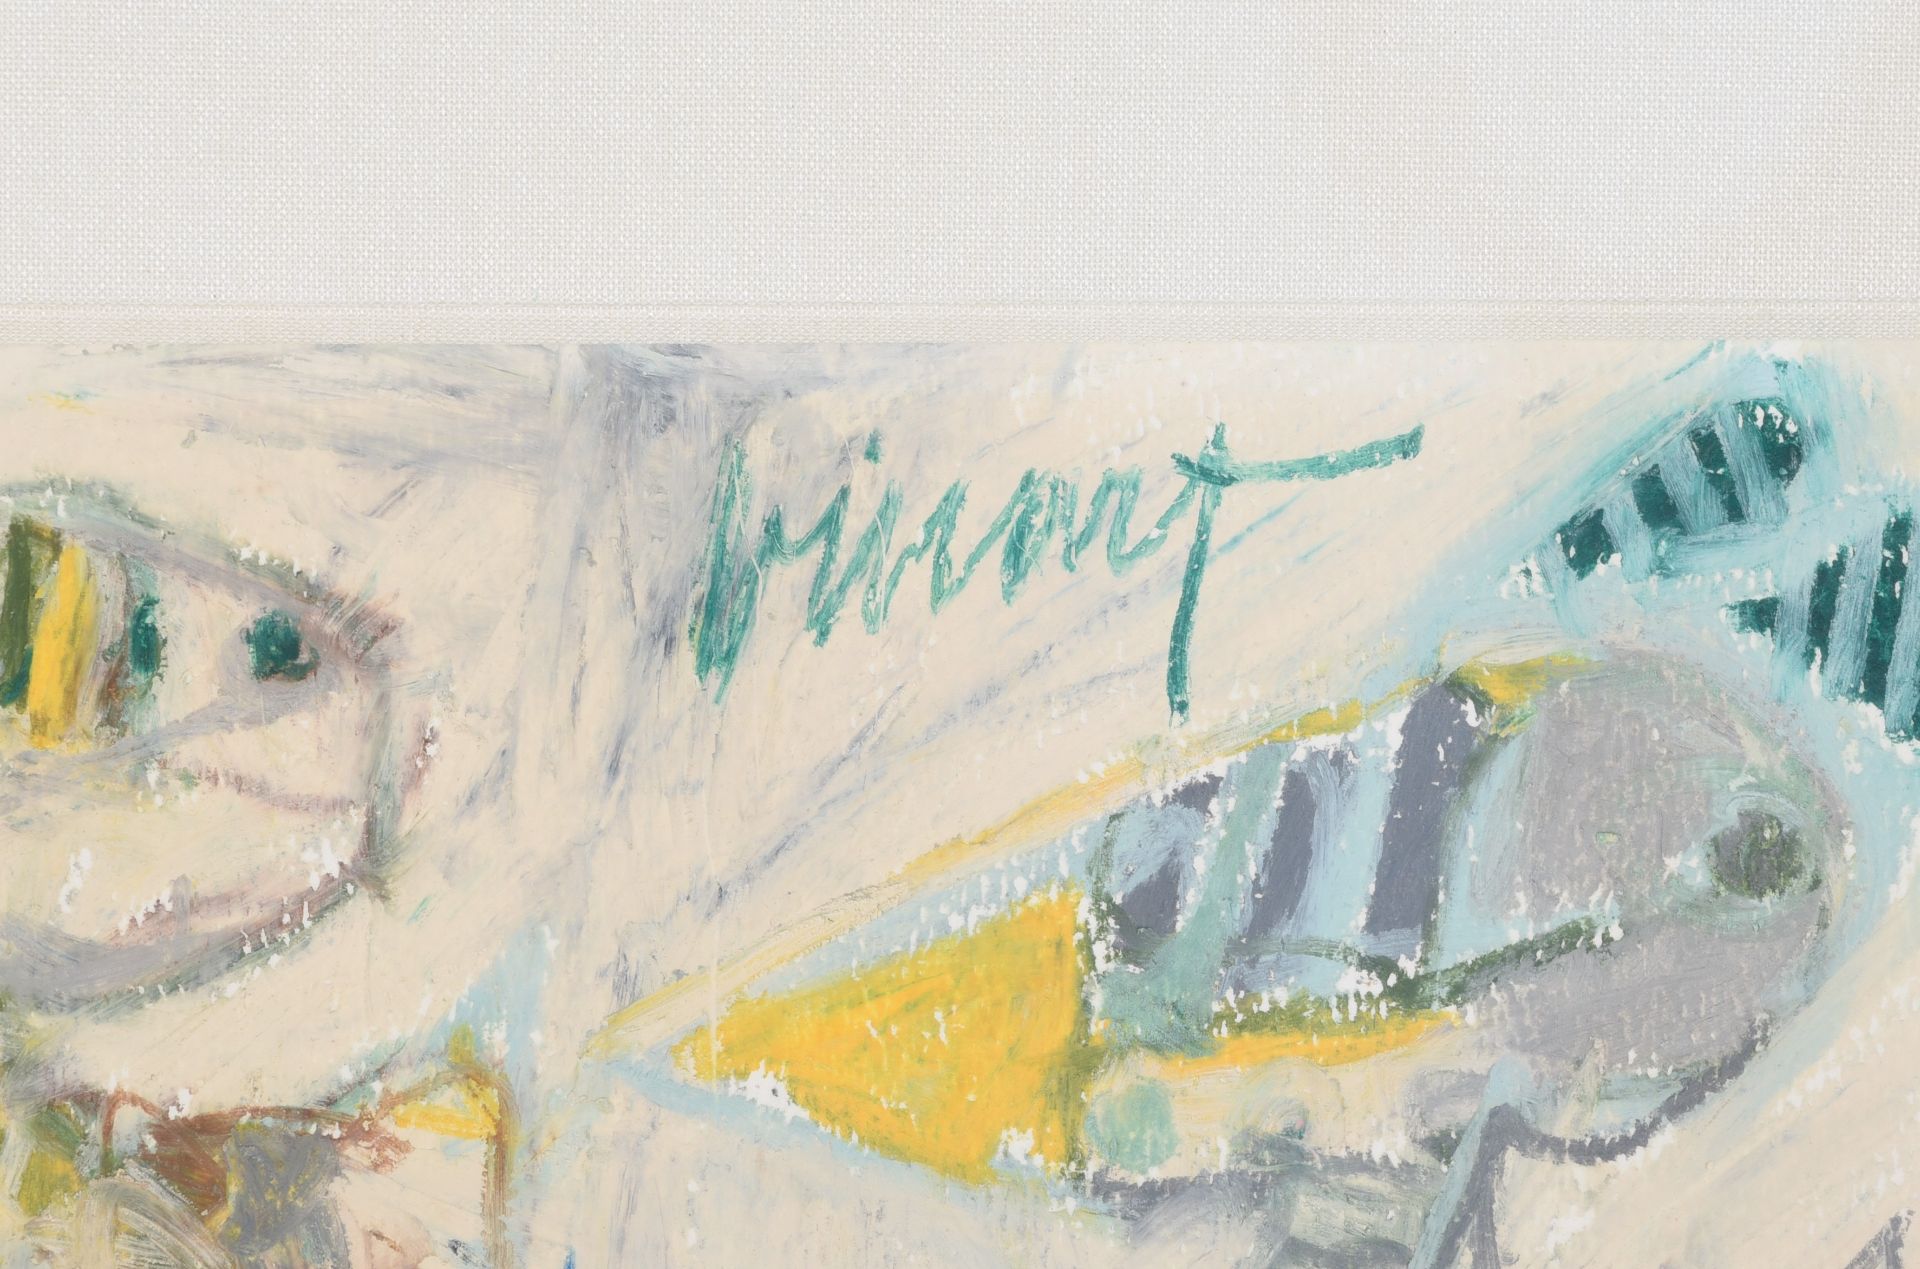 (BIDDING ONLY ON CARLOBONTE.BE) Pierre Binart (1933-2006), 'De Krijgers', gouache on paper, 41 x 54 - Image 4 of 8